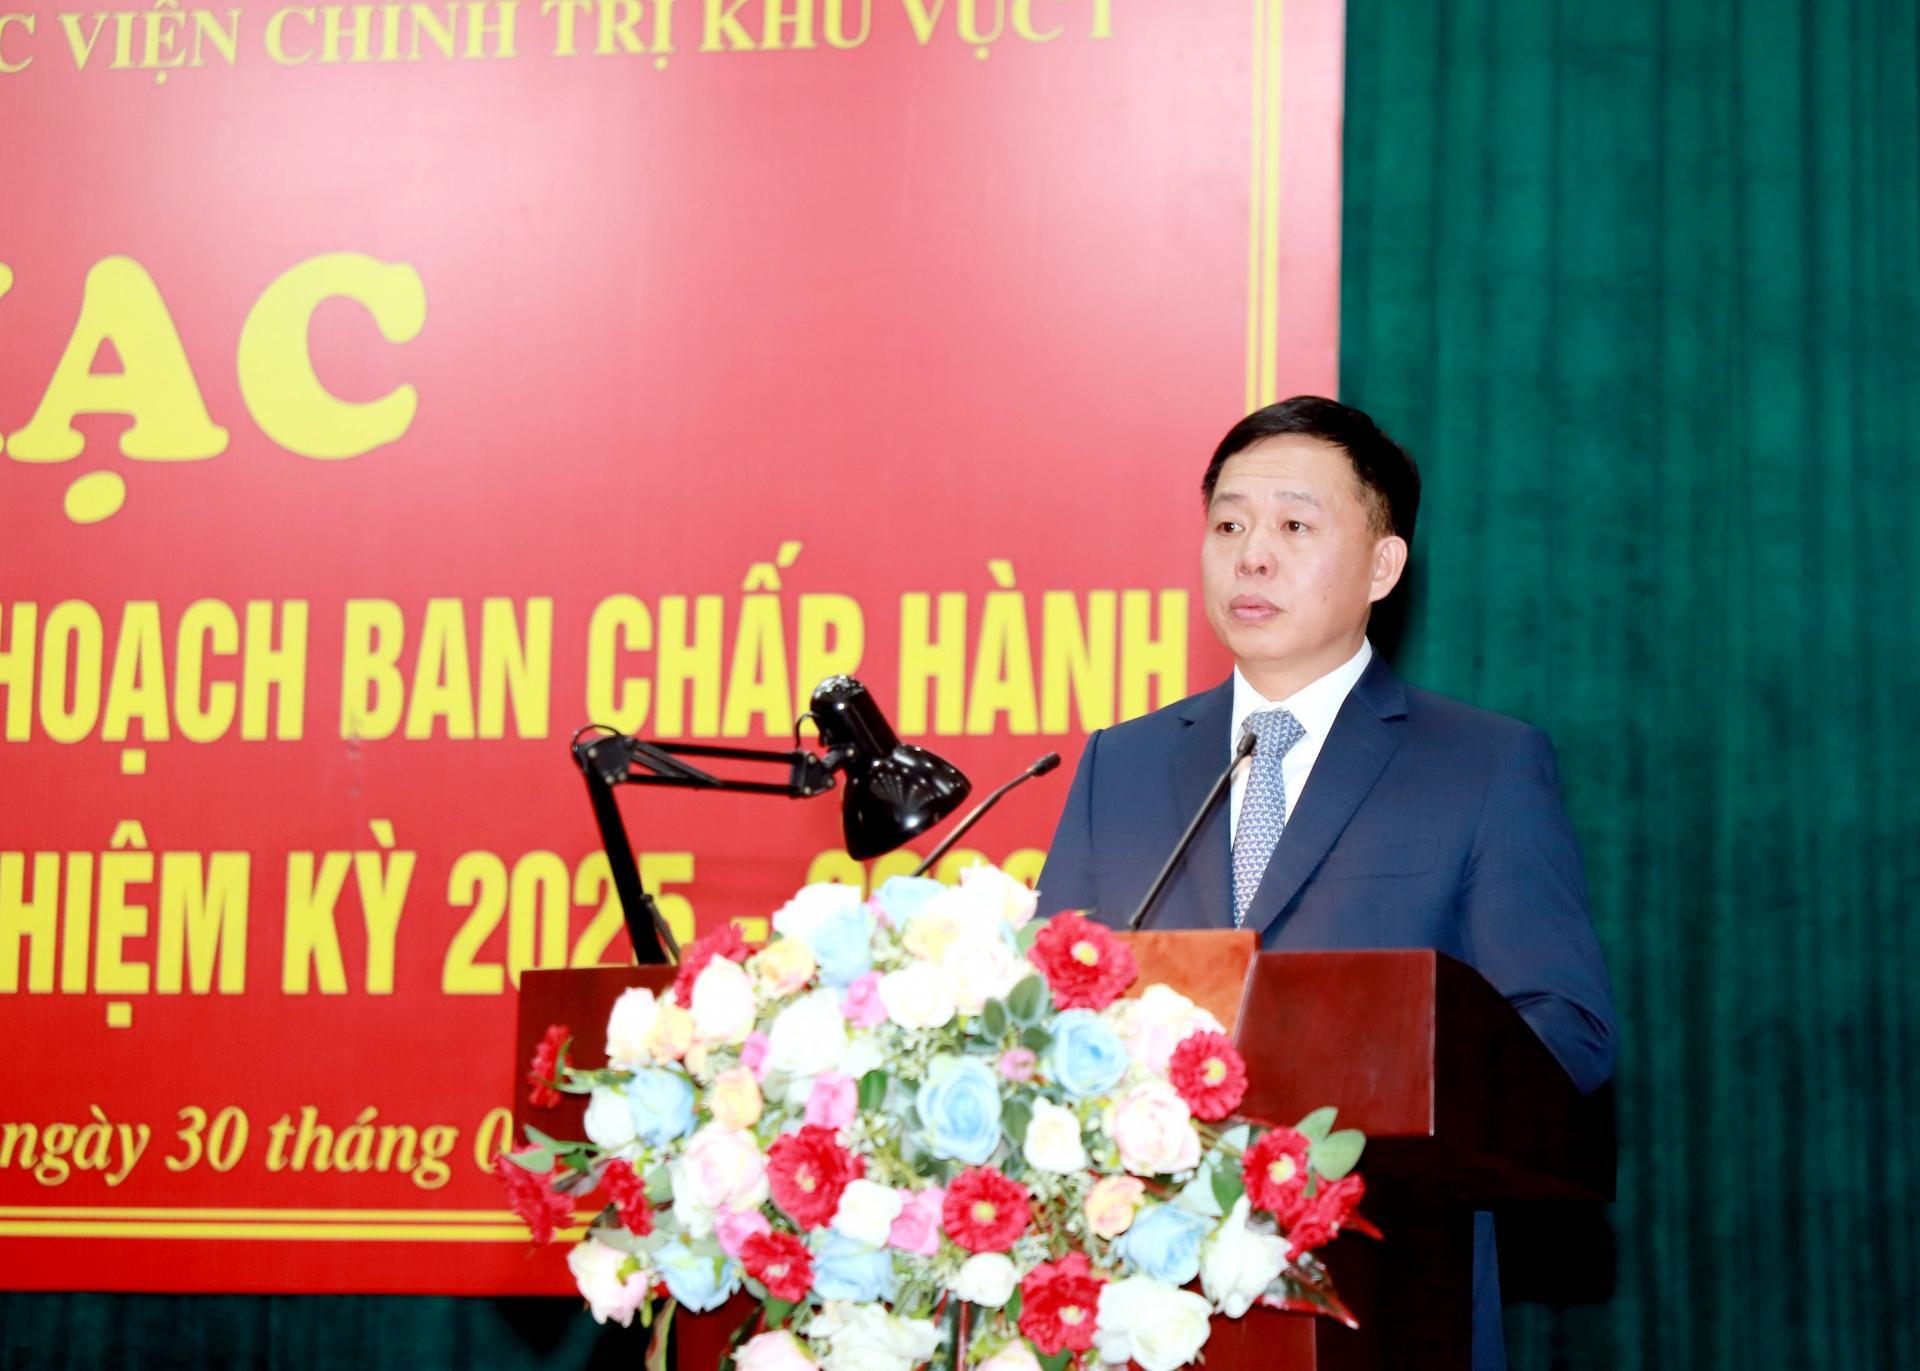 Phó Giáo sư, Tiến sỹ Nguyễn Vĩnh Thanh, Giám đốc Học viện Chính trị khu vực 1 phát biểu tại buổi lễ